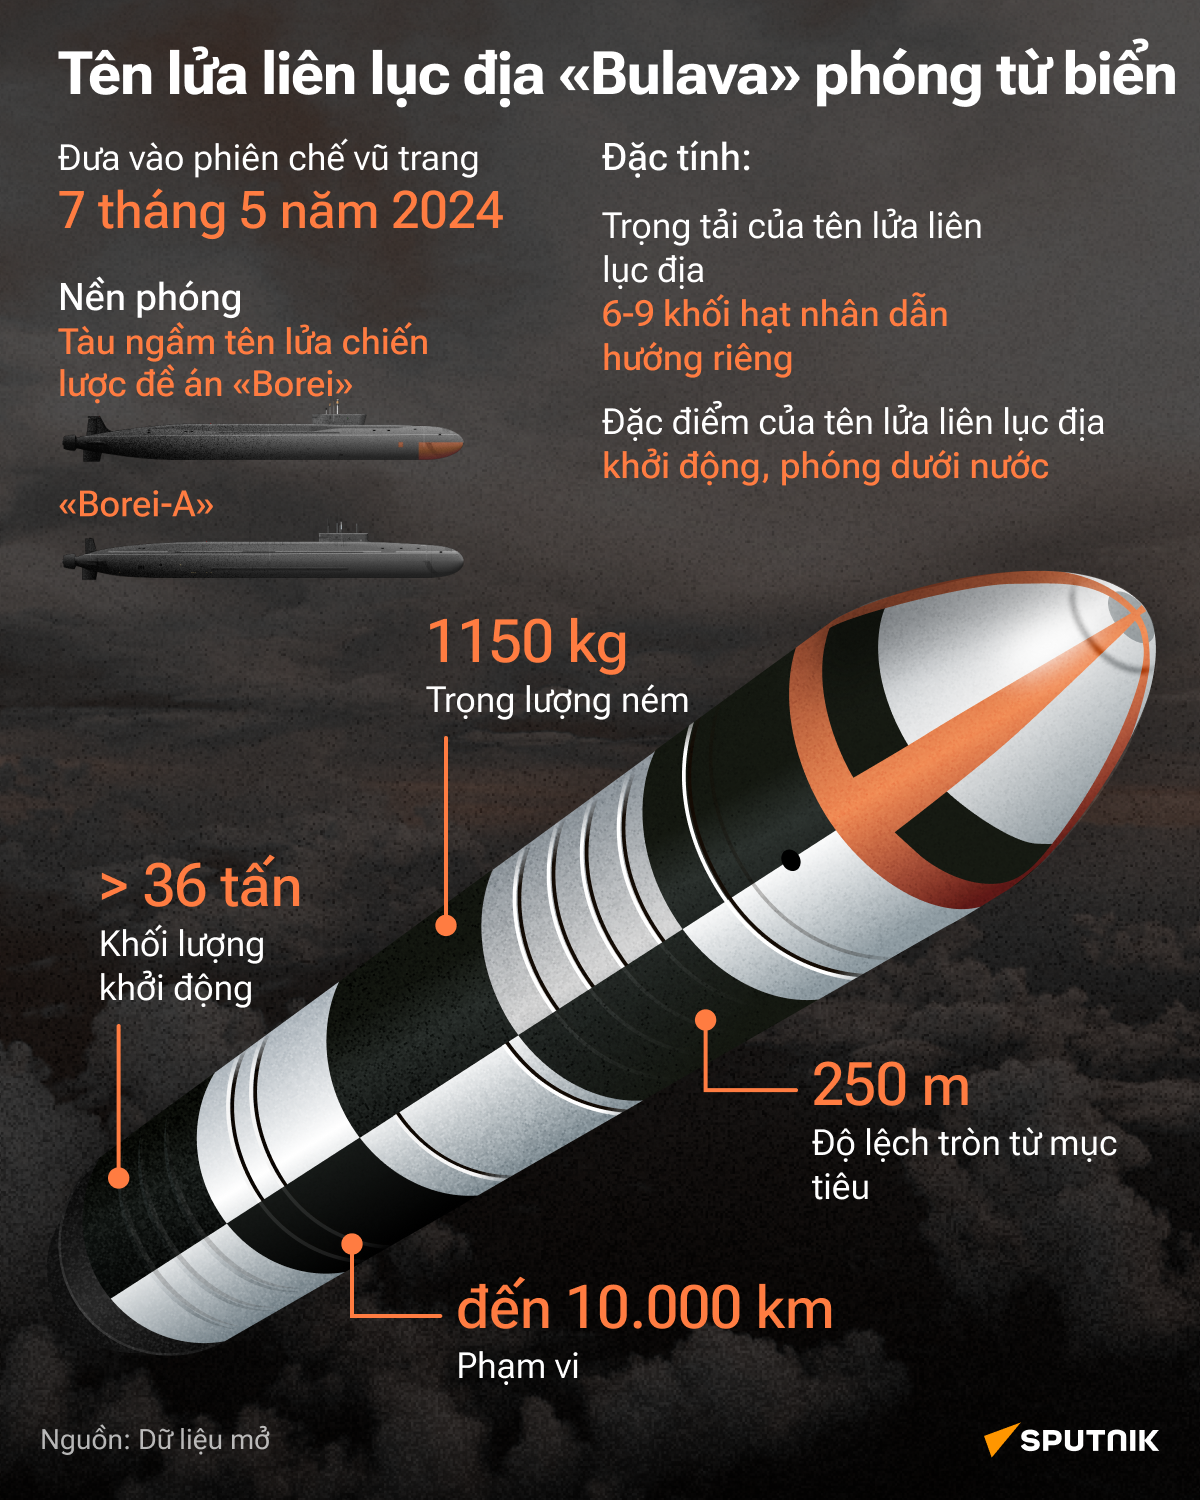 Tên lửa Bulava: bổ sung mới nhất cho kho vũ khí hạt nhân chiến lược của Nga - Sputnik Việt Nam